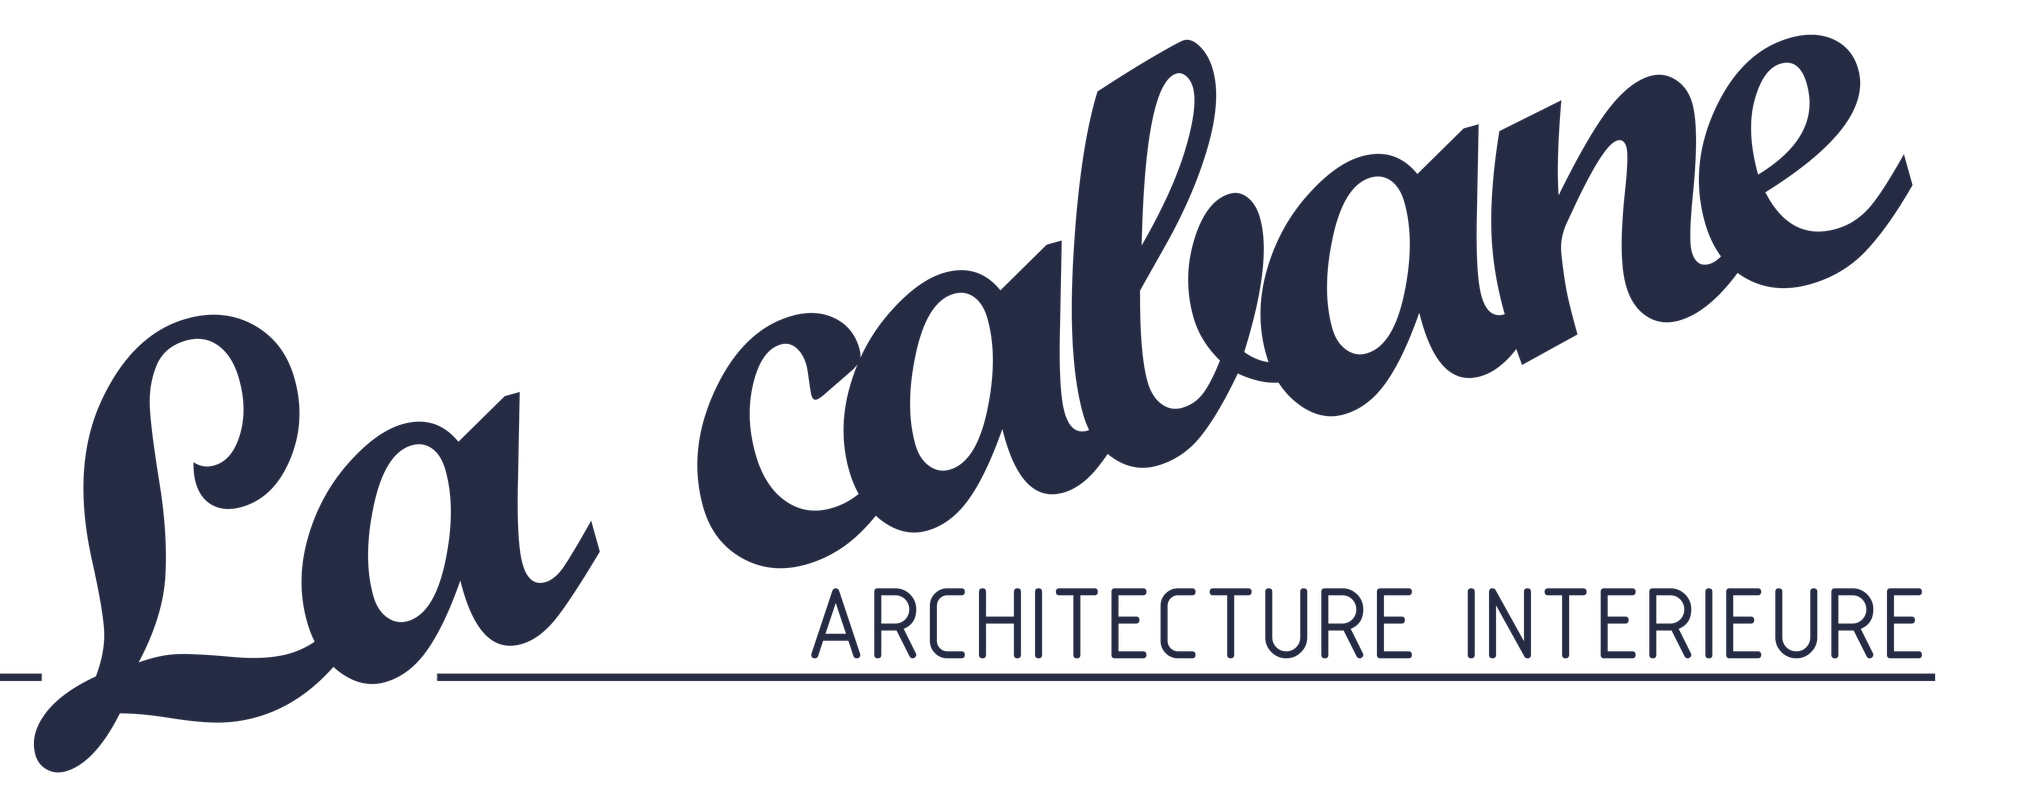 Logo La Cabane Architecture Interieure